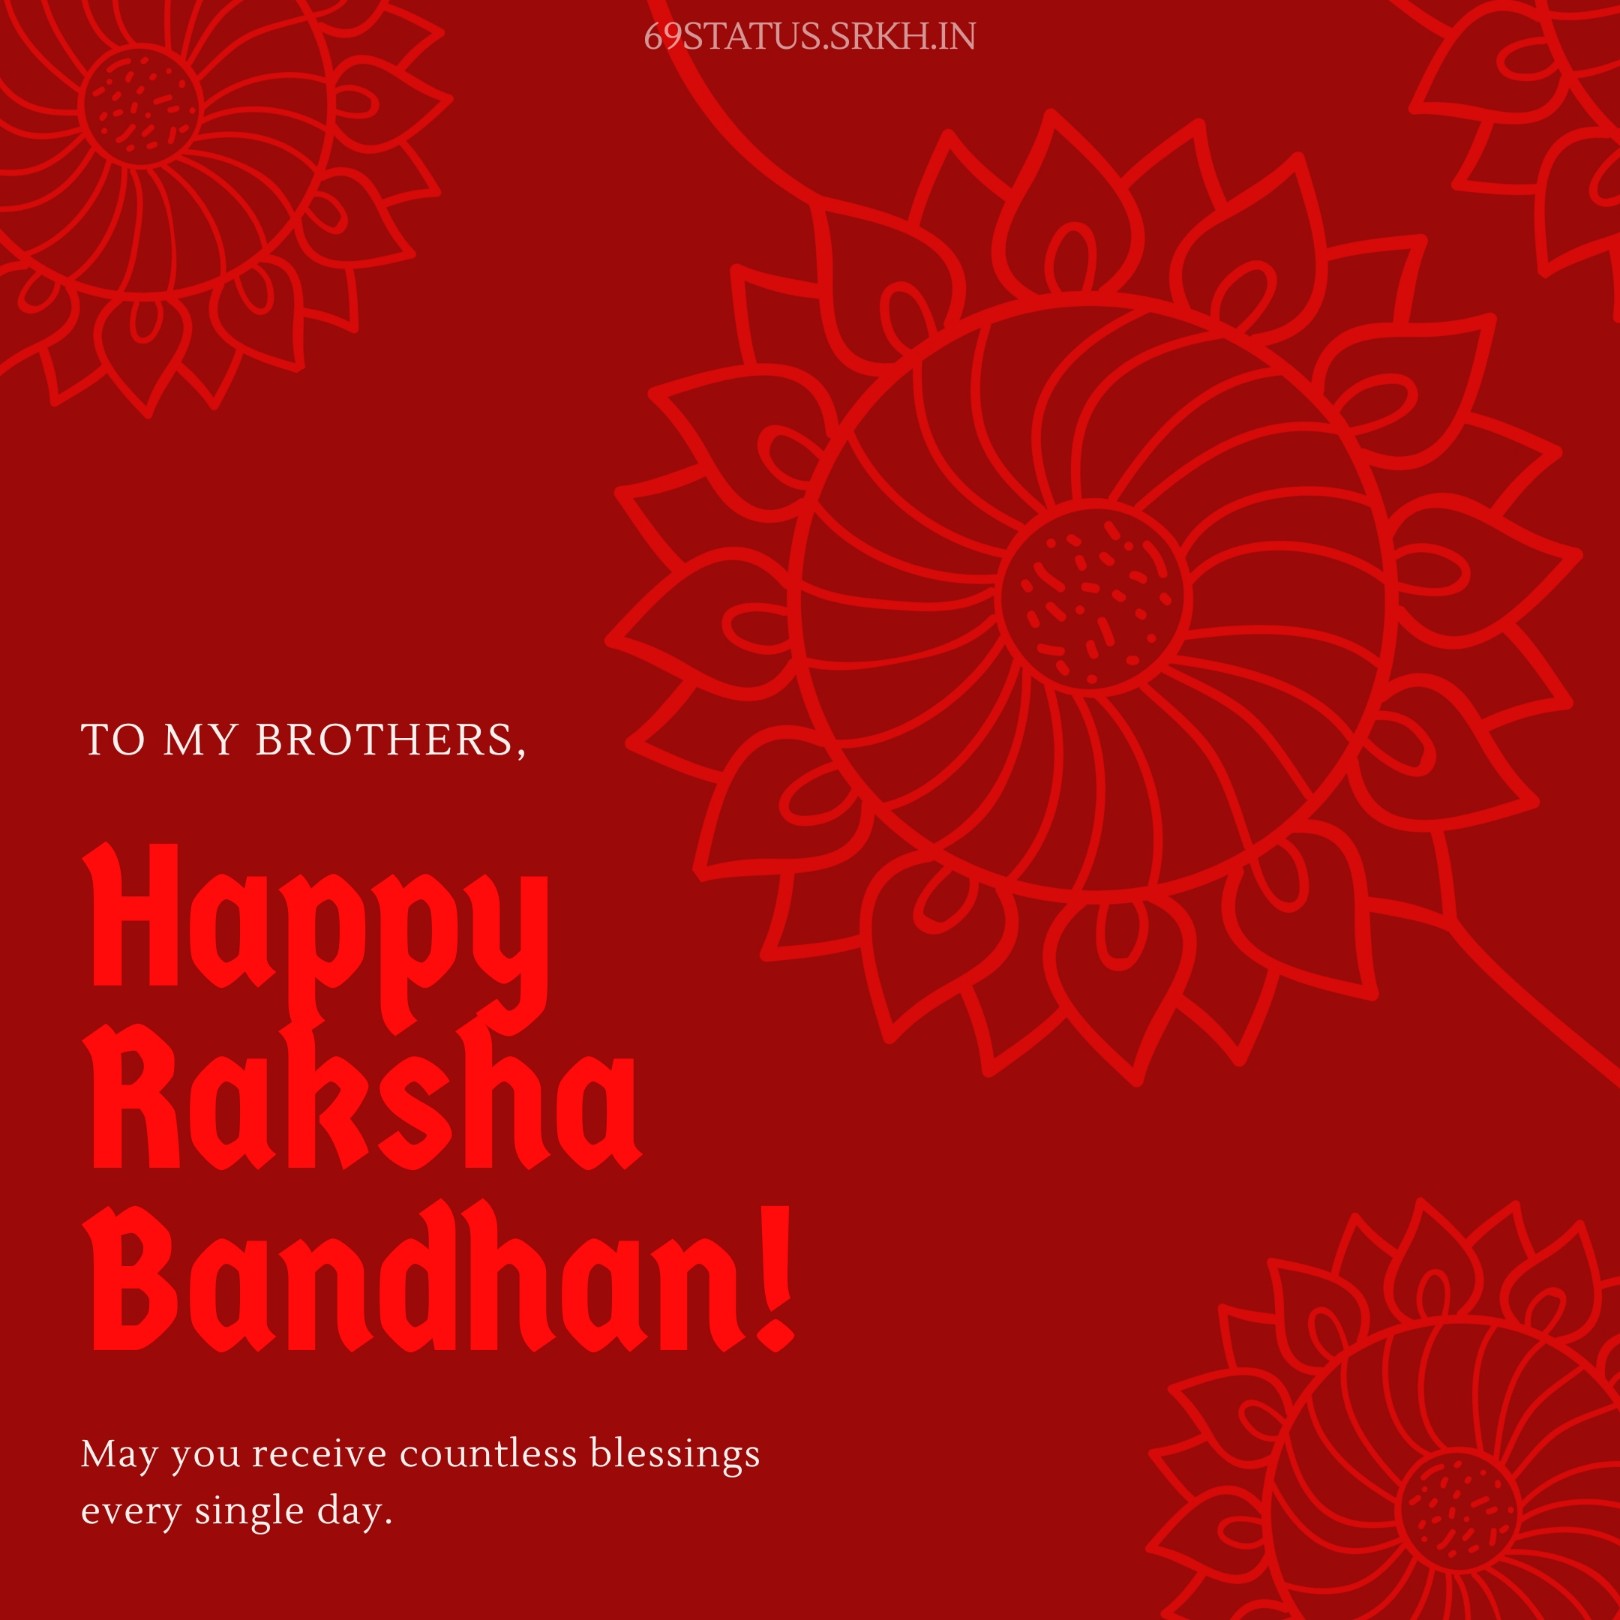 Images Related to Raksha Bandhan